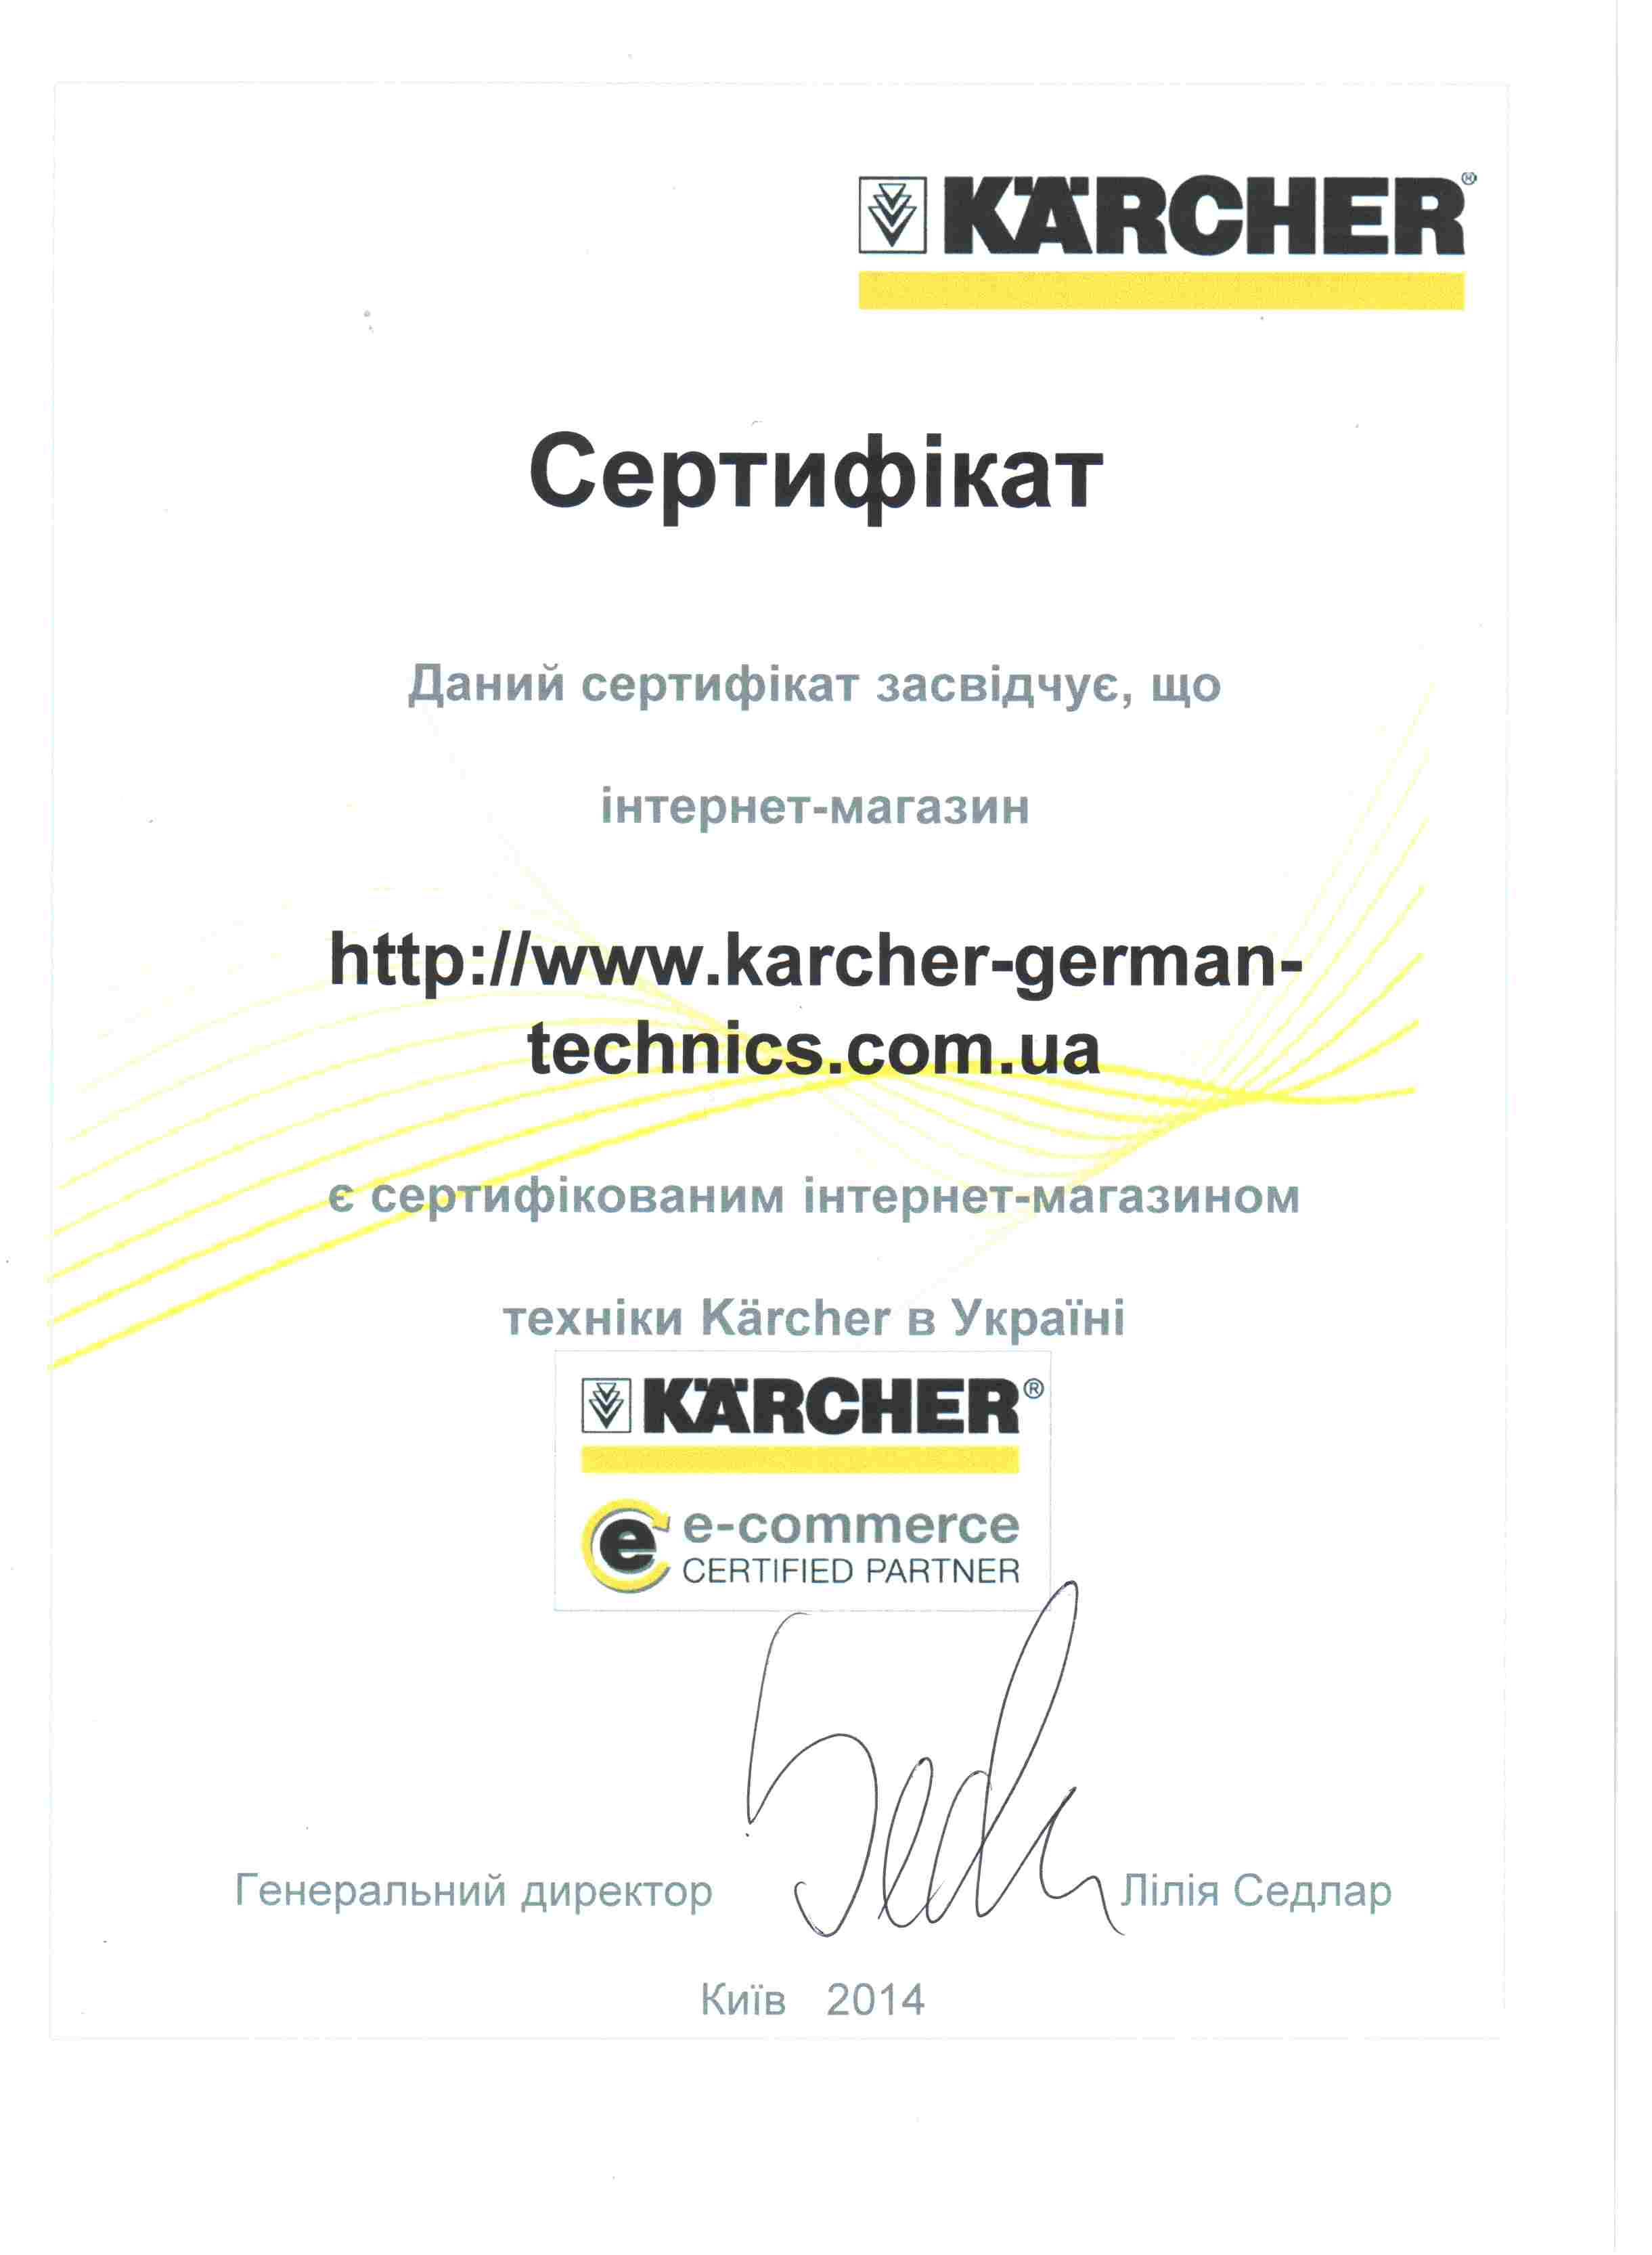 Сертификат компании KARCHER